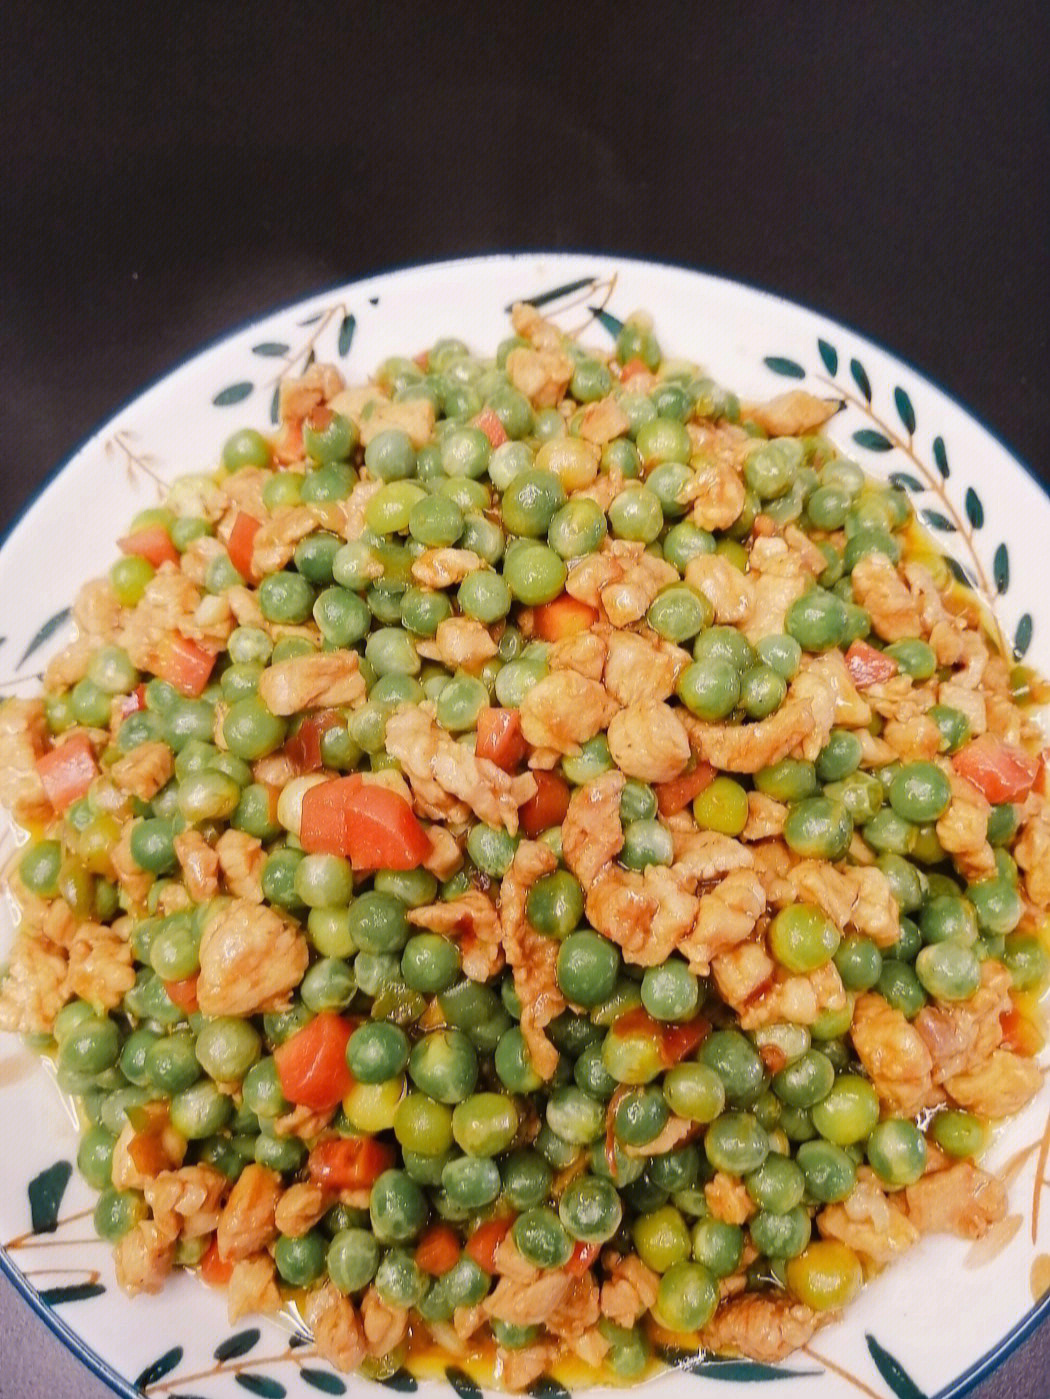 食材:豌豆米,精瘦肉,两瓣大蒜,少许子姜,一个胡萝卜,一个小青椒78